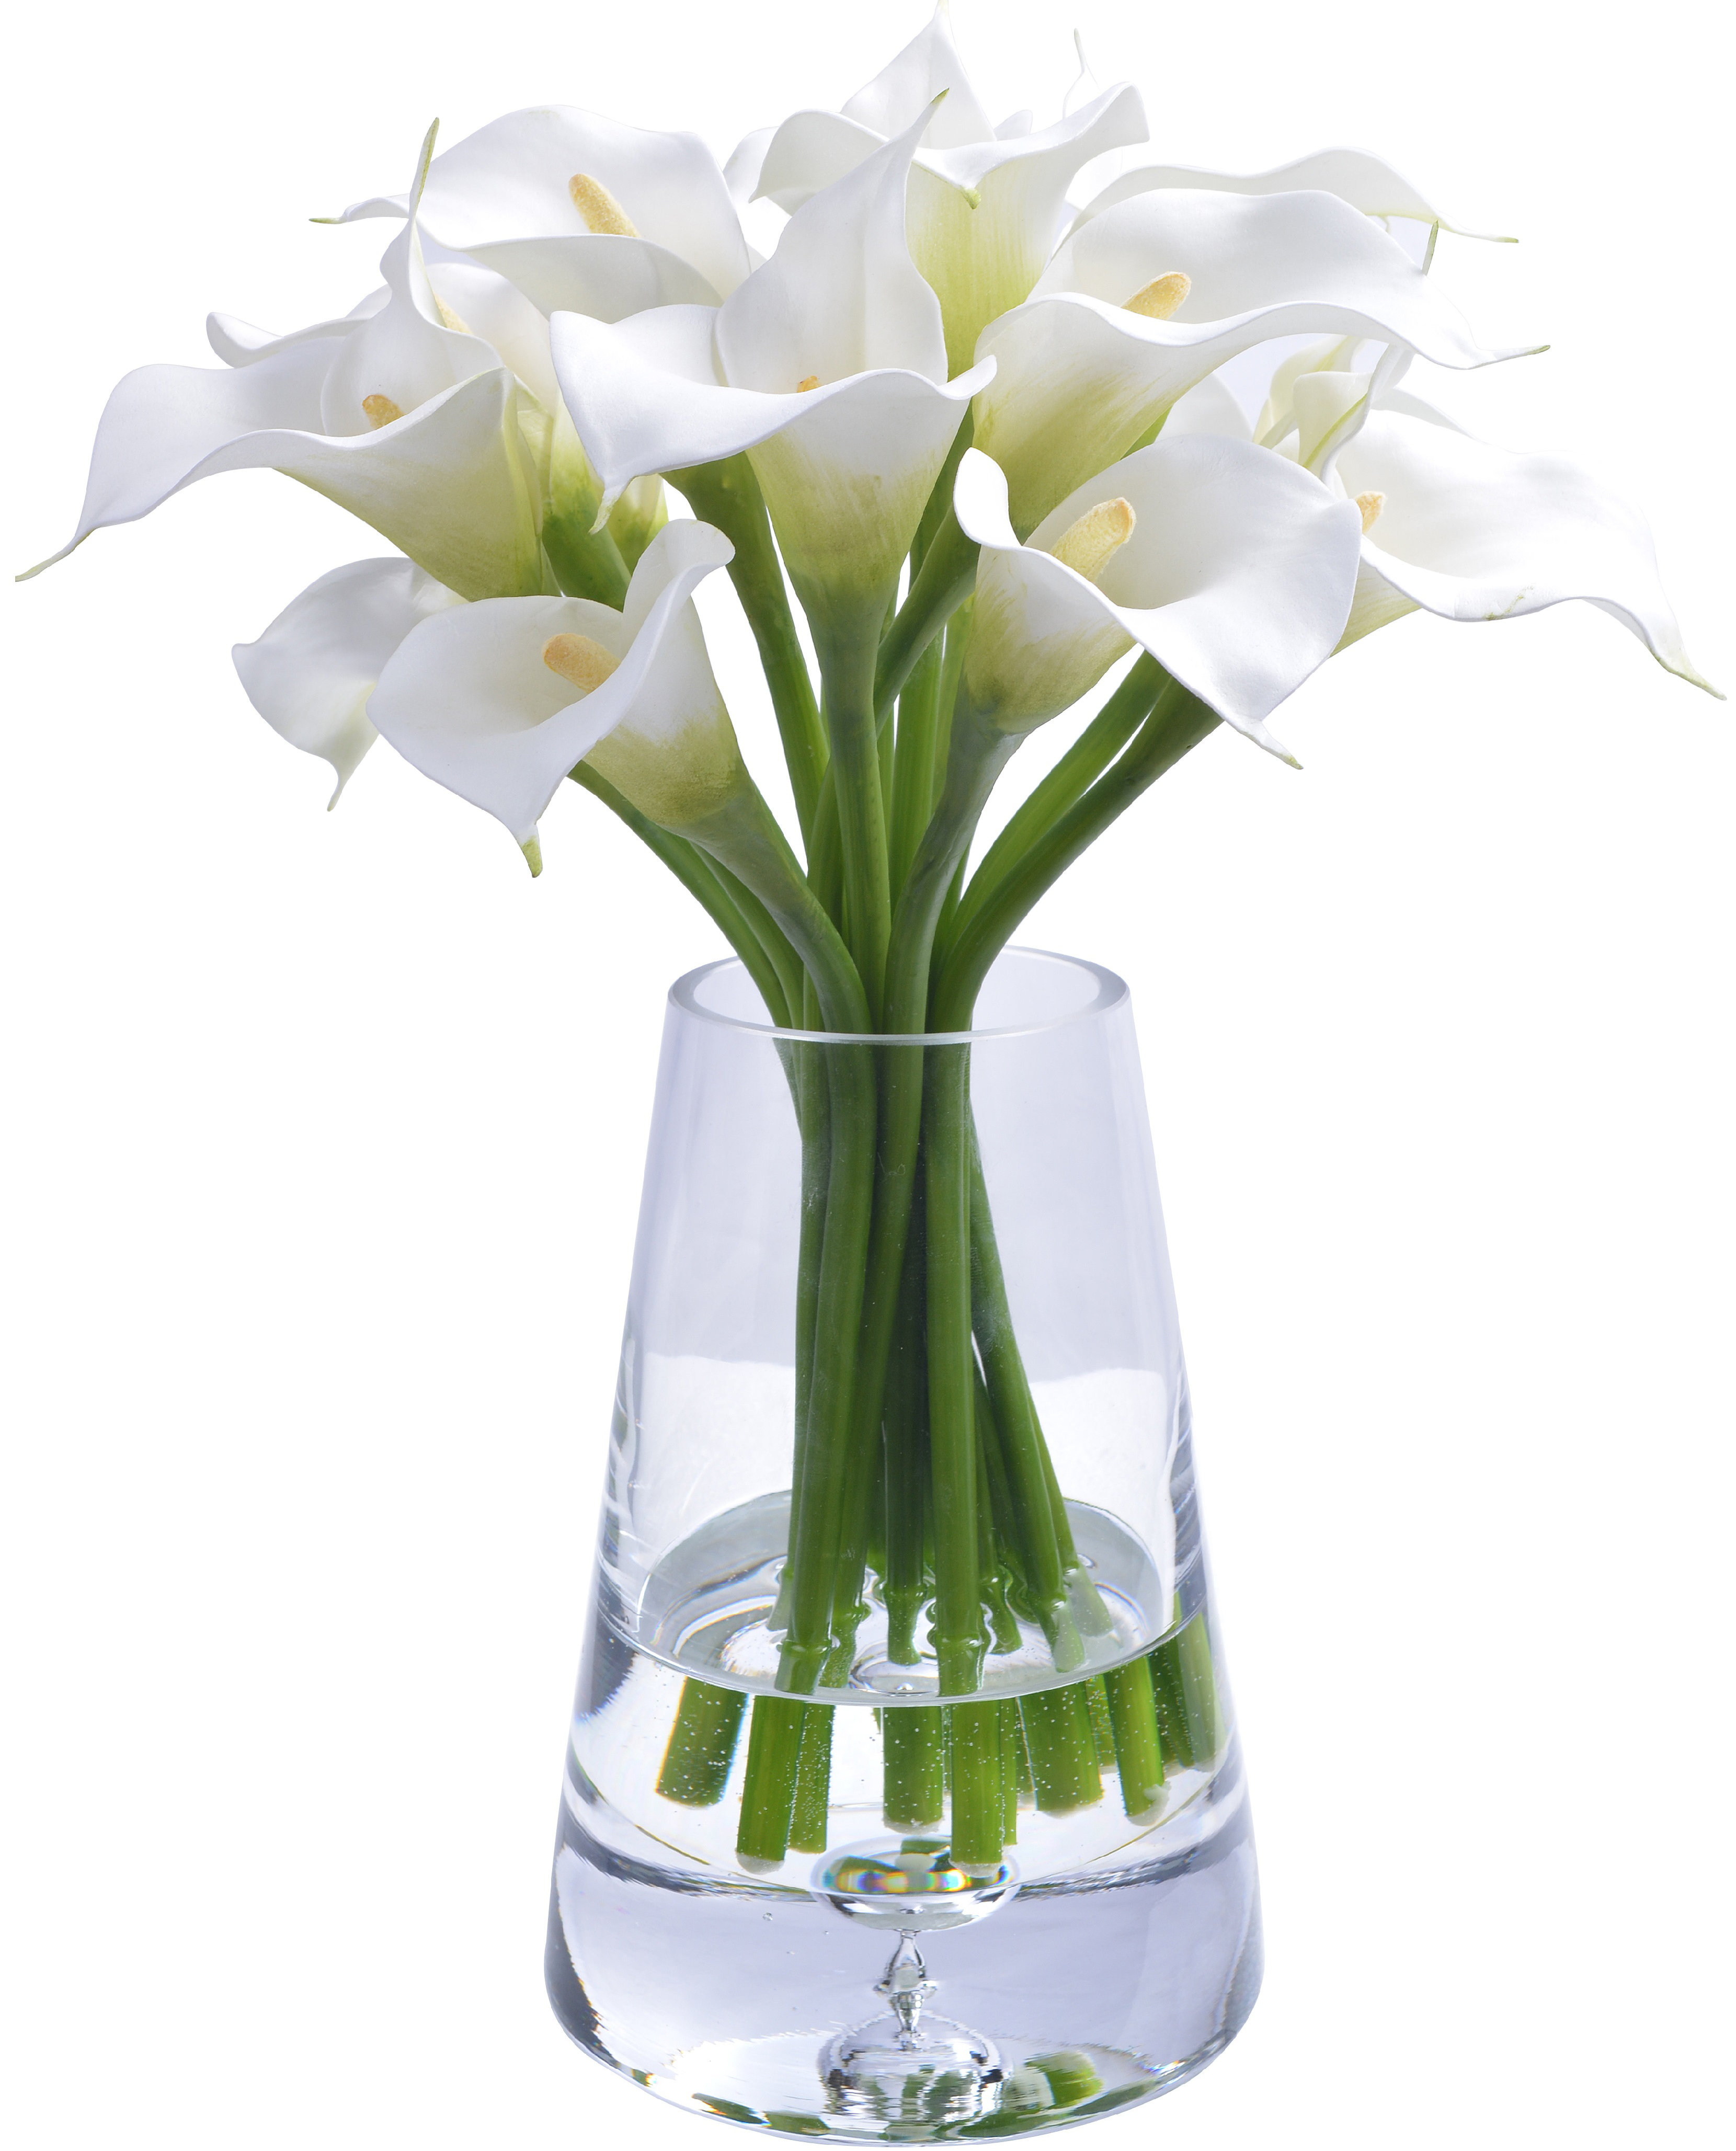 ايموجي مناظر طبيعية  Calla-lily-floral-arrangements-in-glass